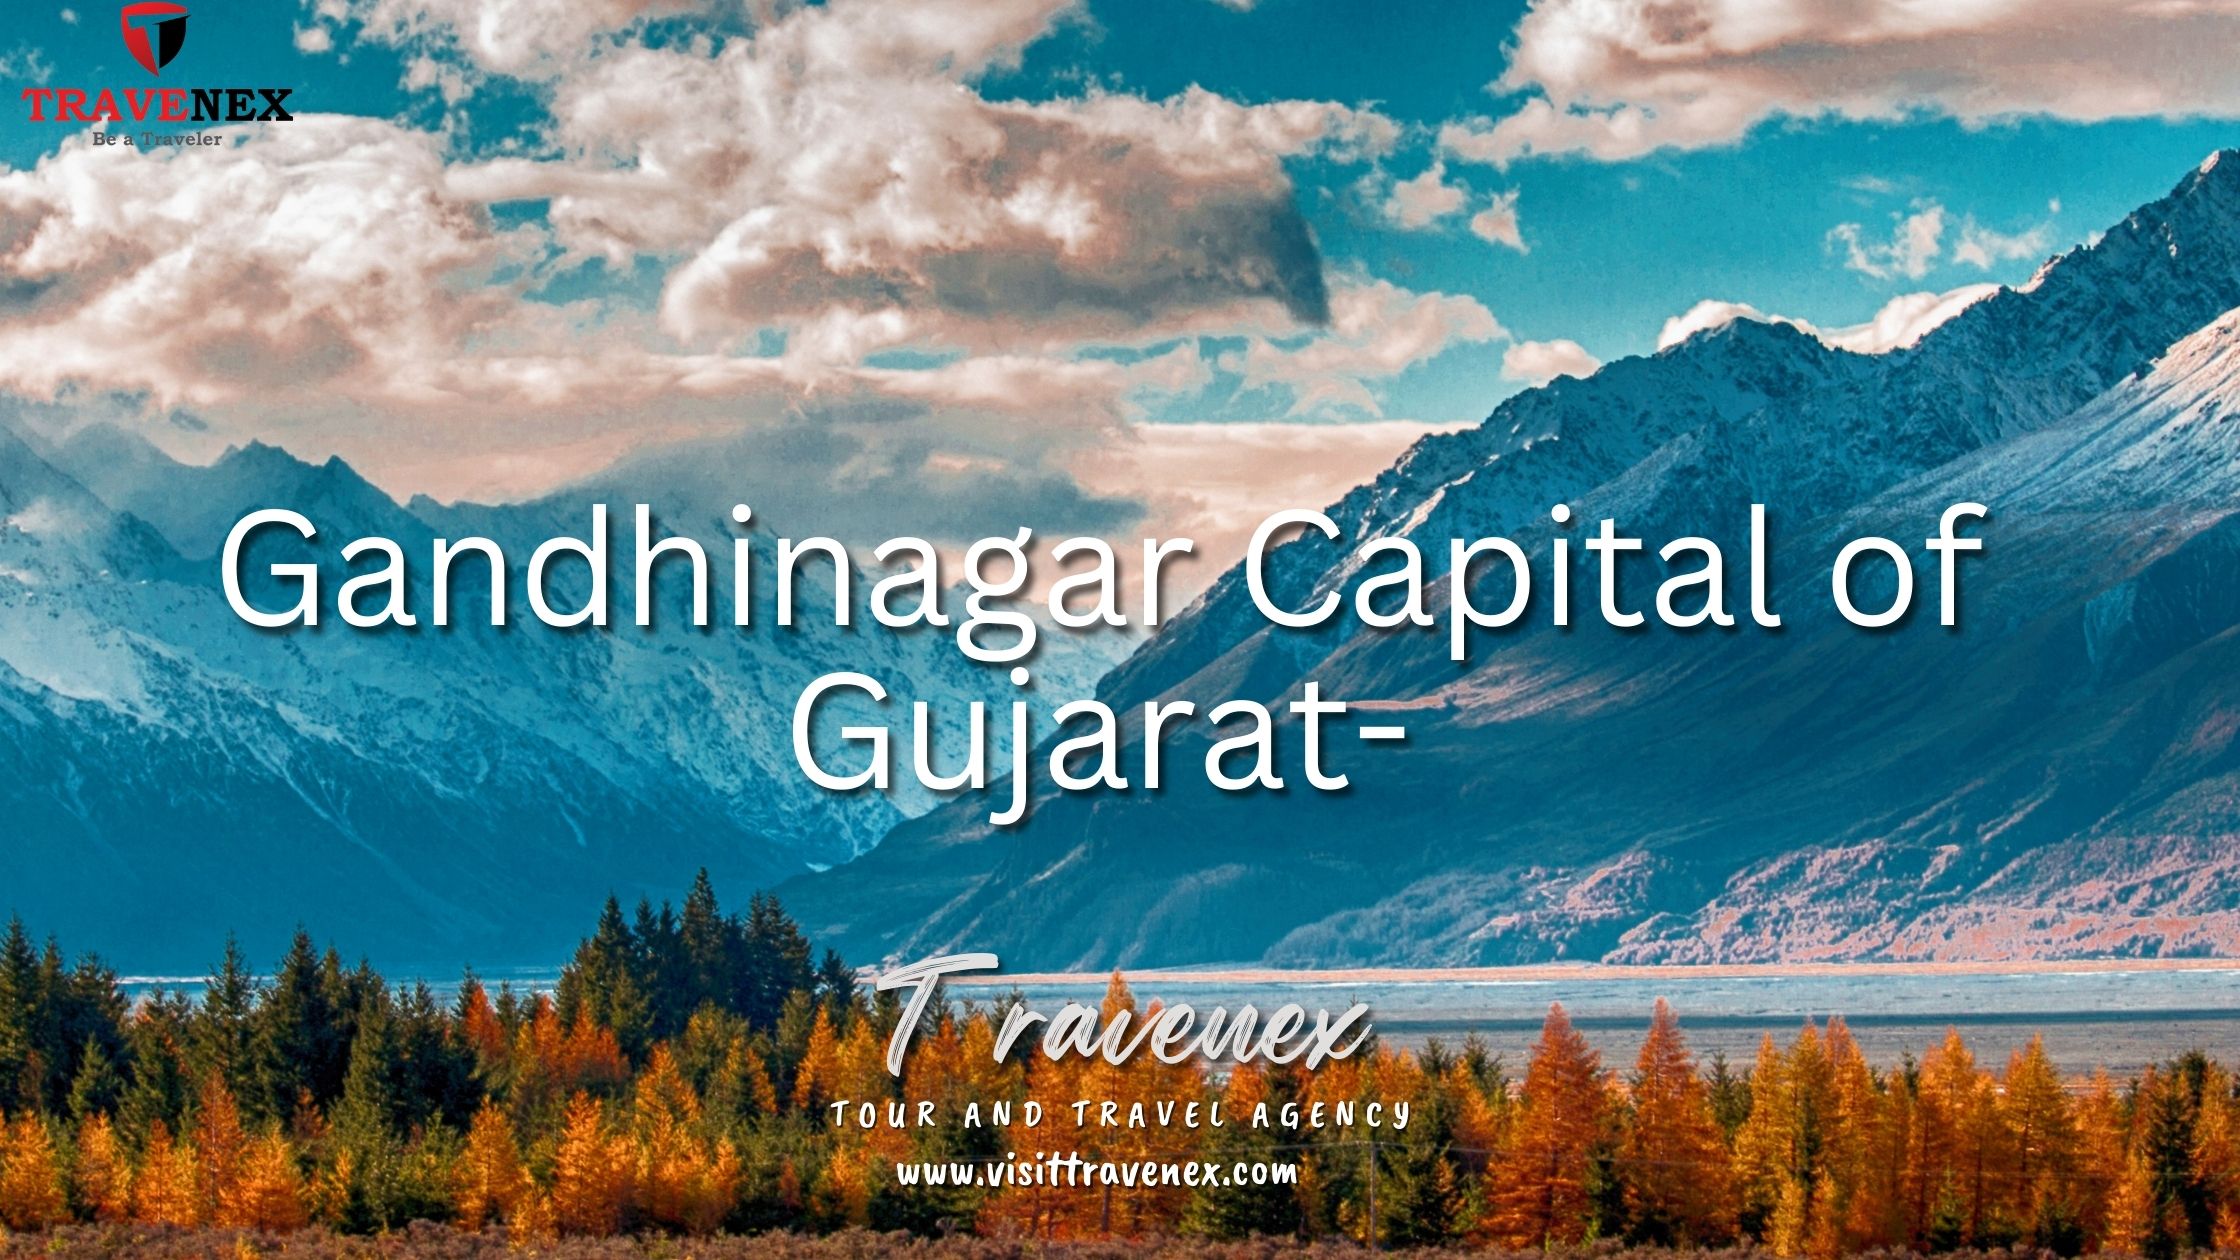 Gandhinagar Capital of Gujarat